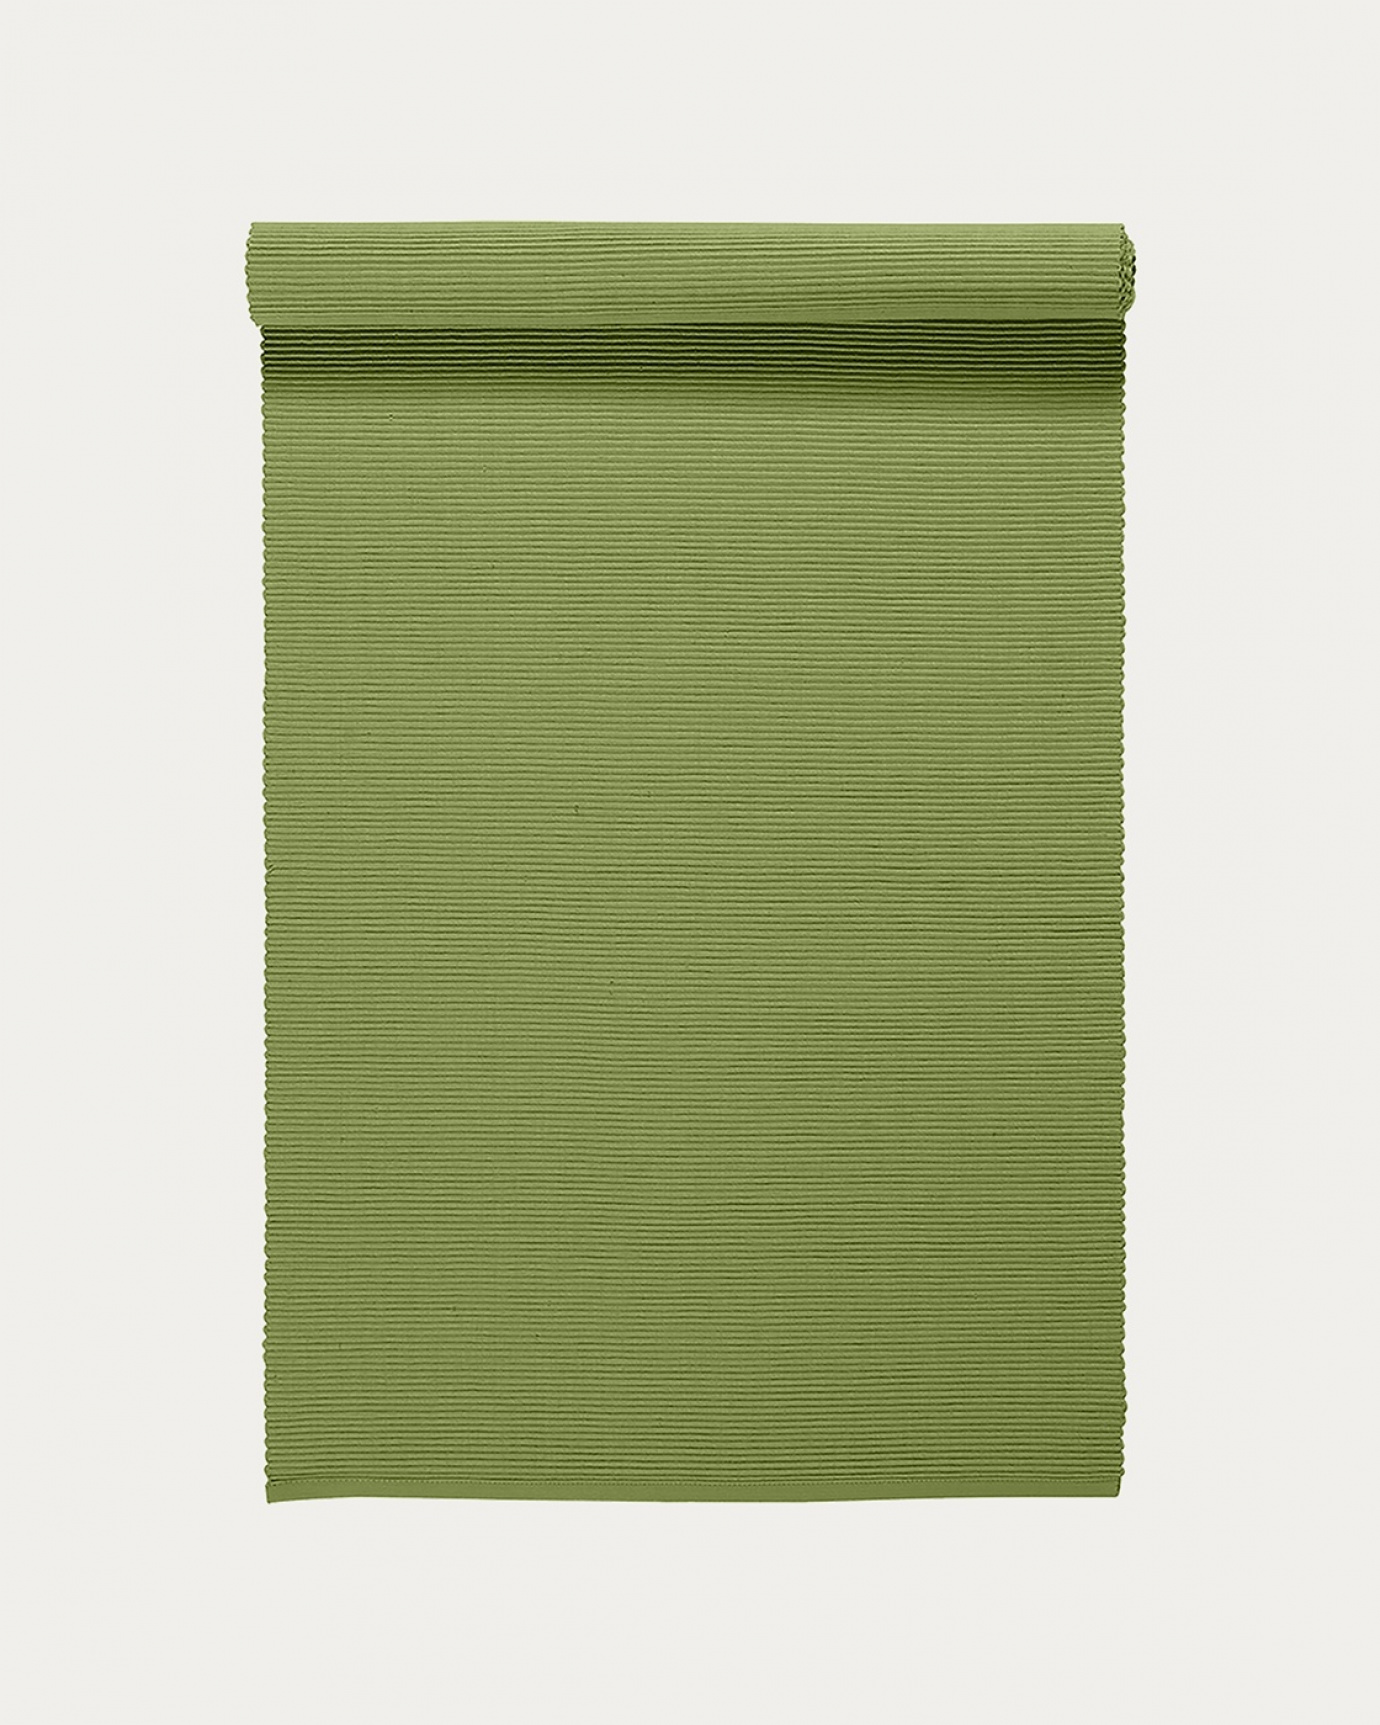 Produktbild moosgrün UNI Tischläufer aus weicher Baumwolle in Rippenqualität von LINUM DESIGN. Größe 45x150 cm.